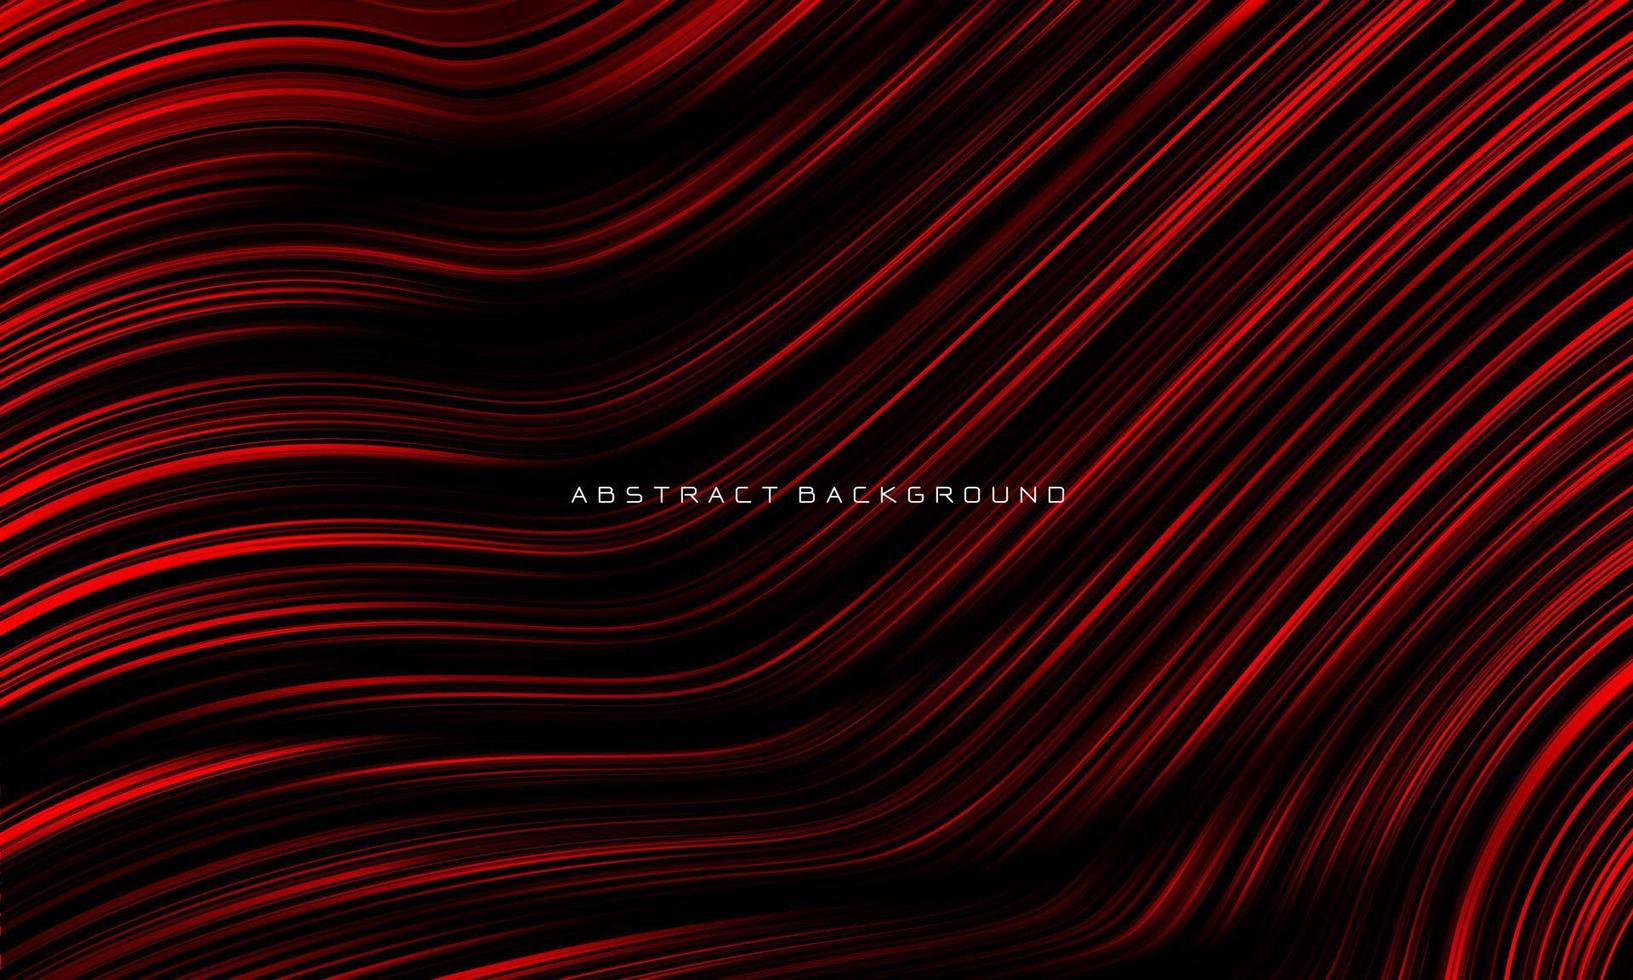 linee nere rosse astratte striscia curva design liscio moderno lusso tecnologia futuristica sfondo vettore